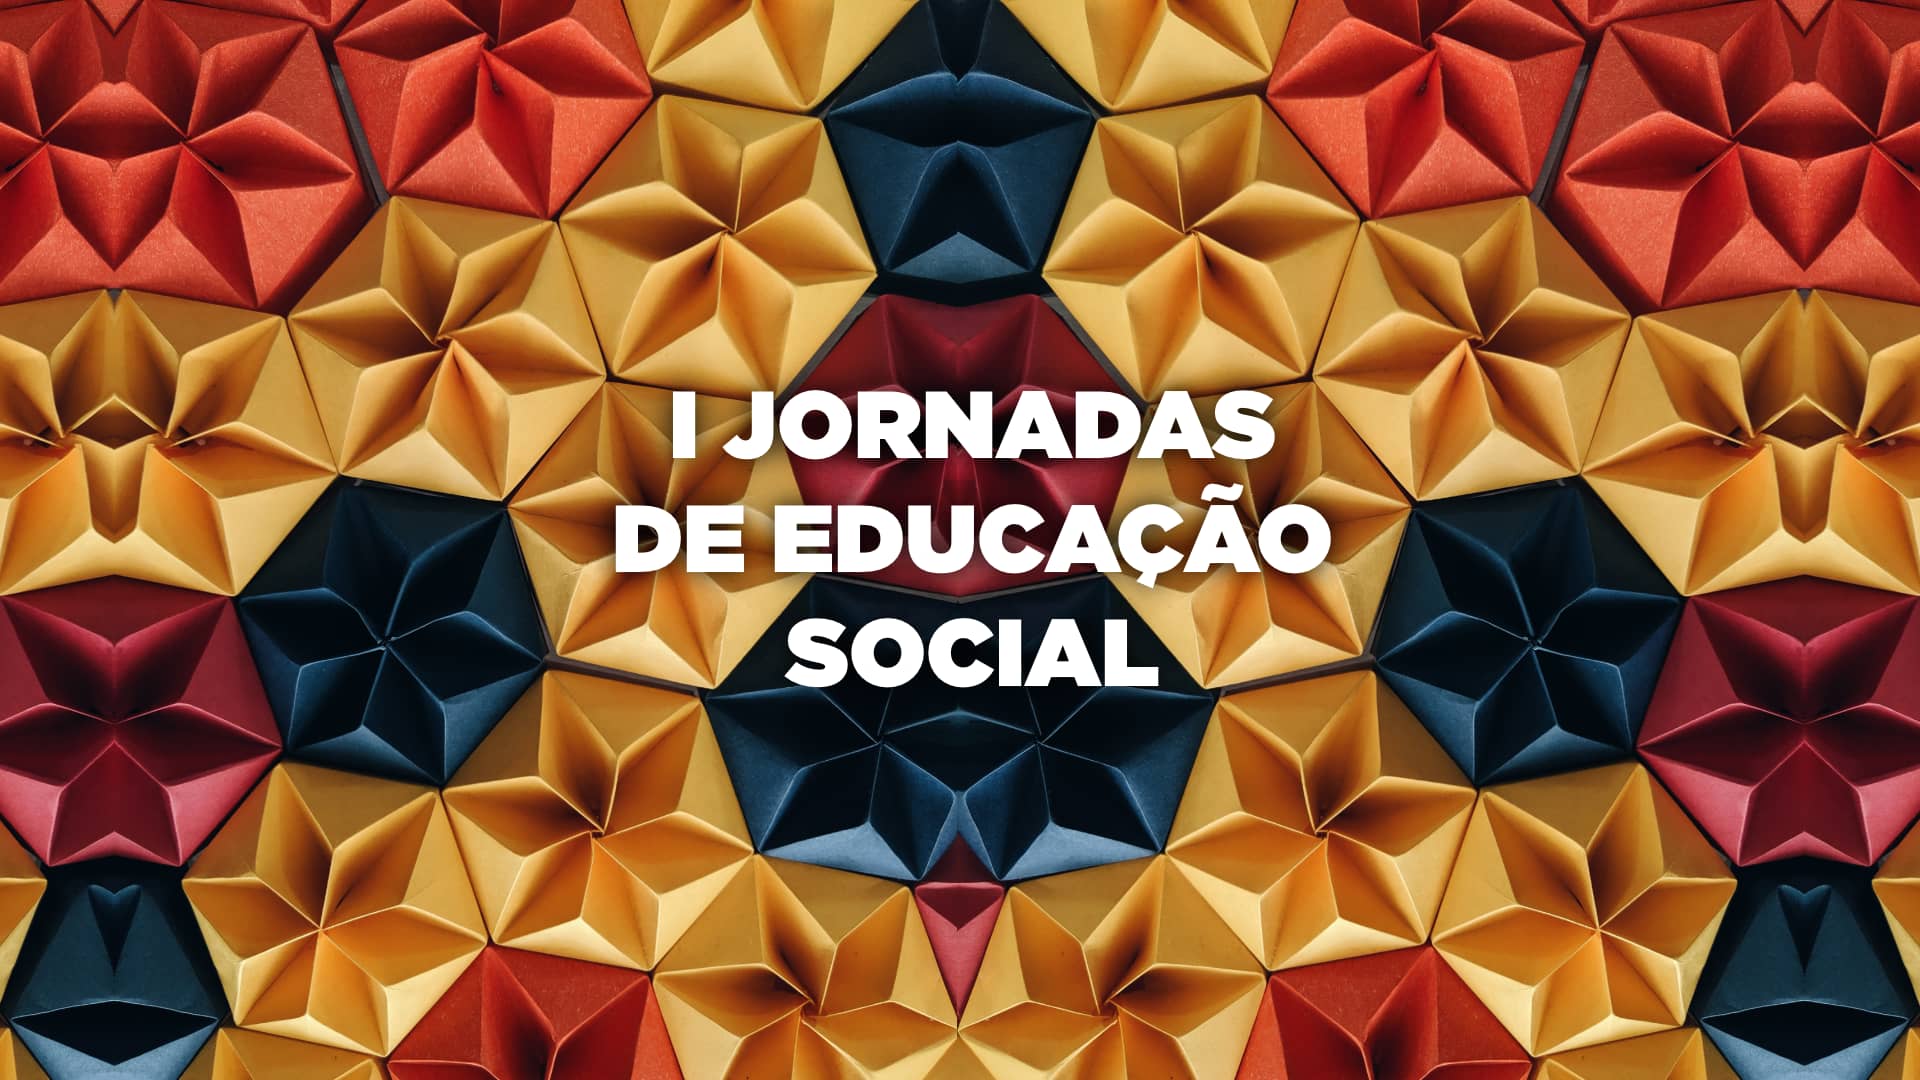 Instituto Piaget de Almada organiza as I Jornadas de Educação Social